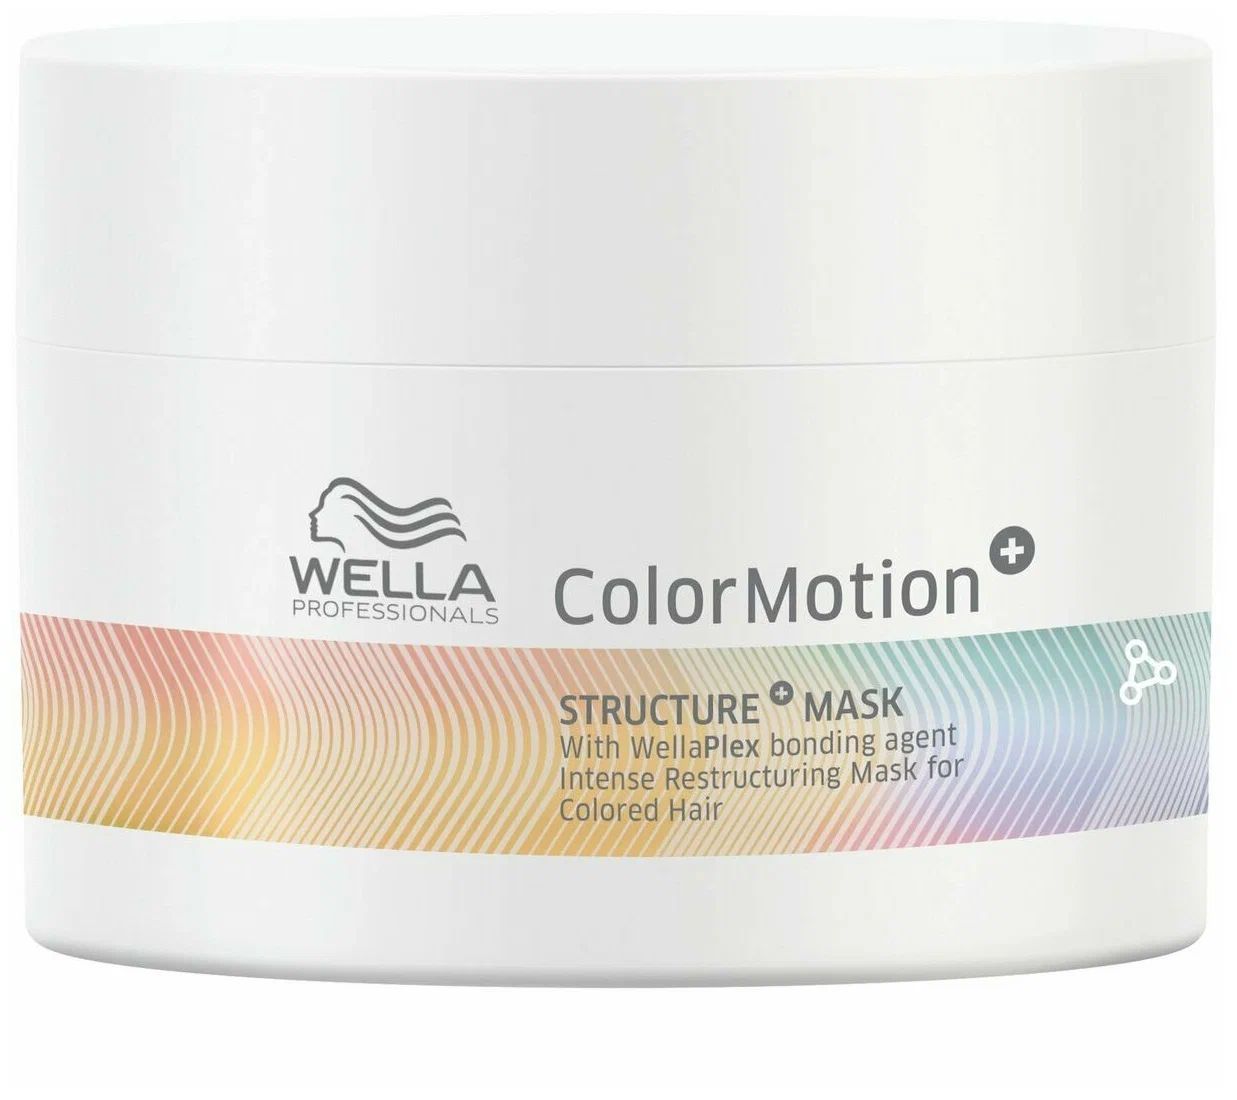 Маска Wella Color Motion Structure Mask для интенсивного восстановления волос 150 мл маска для волос wella professionals color motion structure mask 150 мл